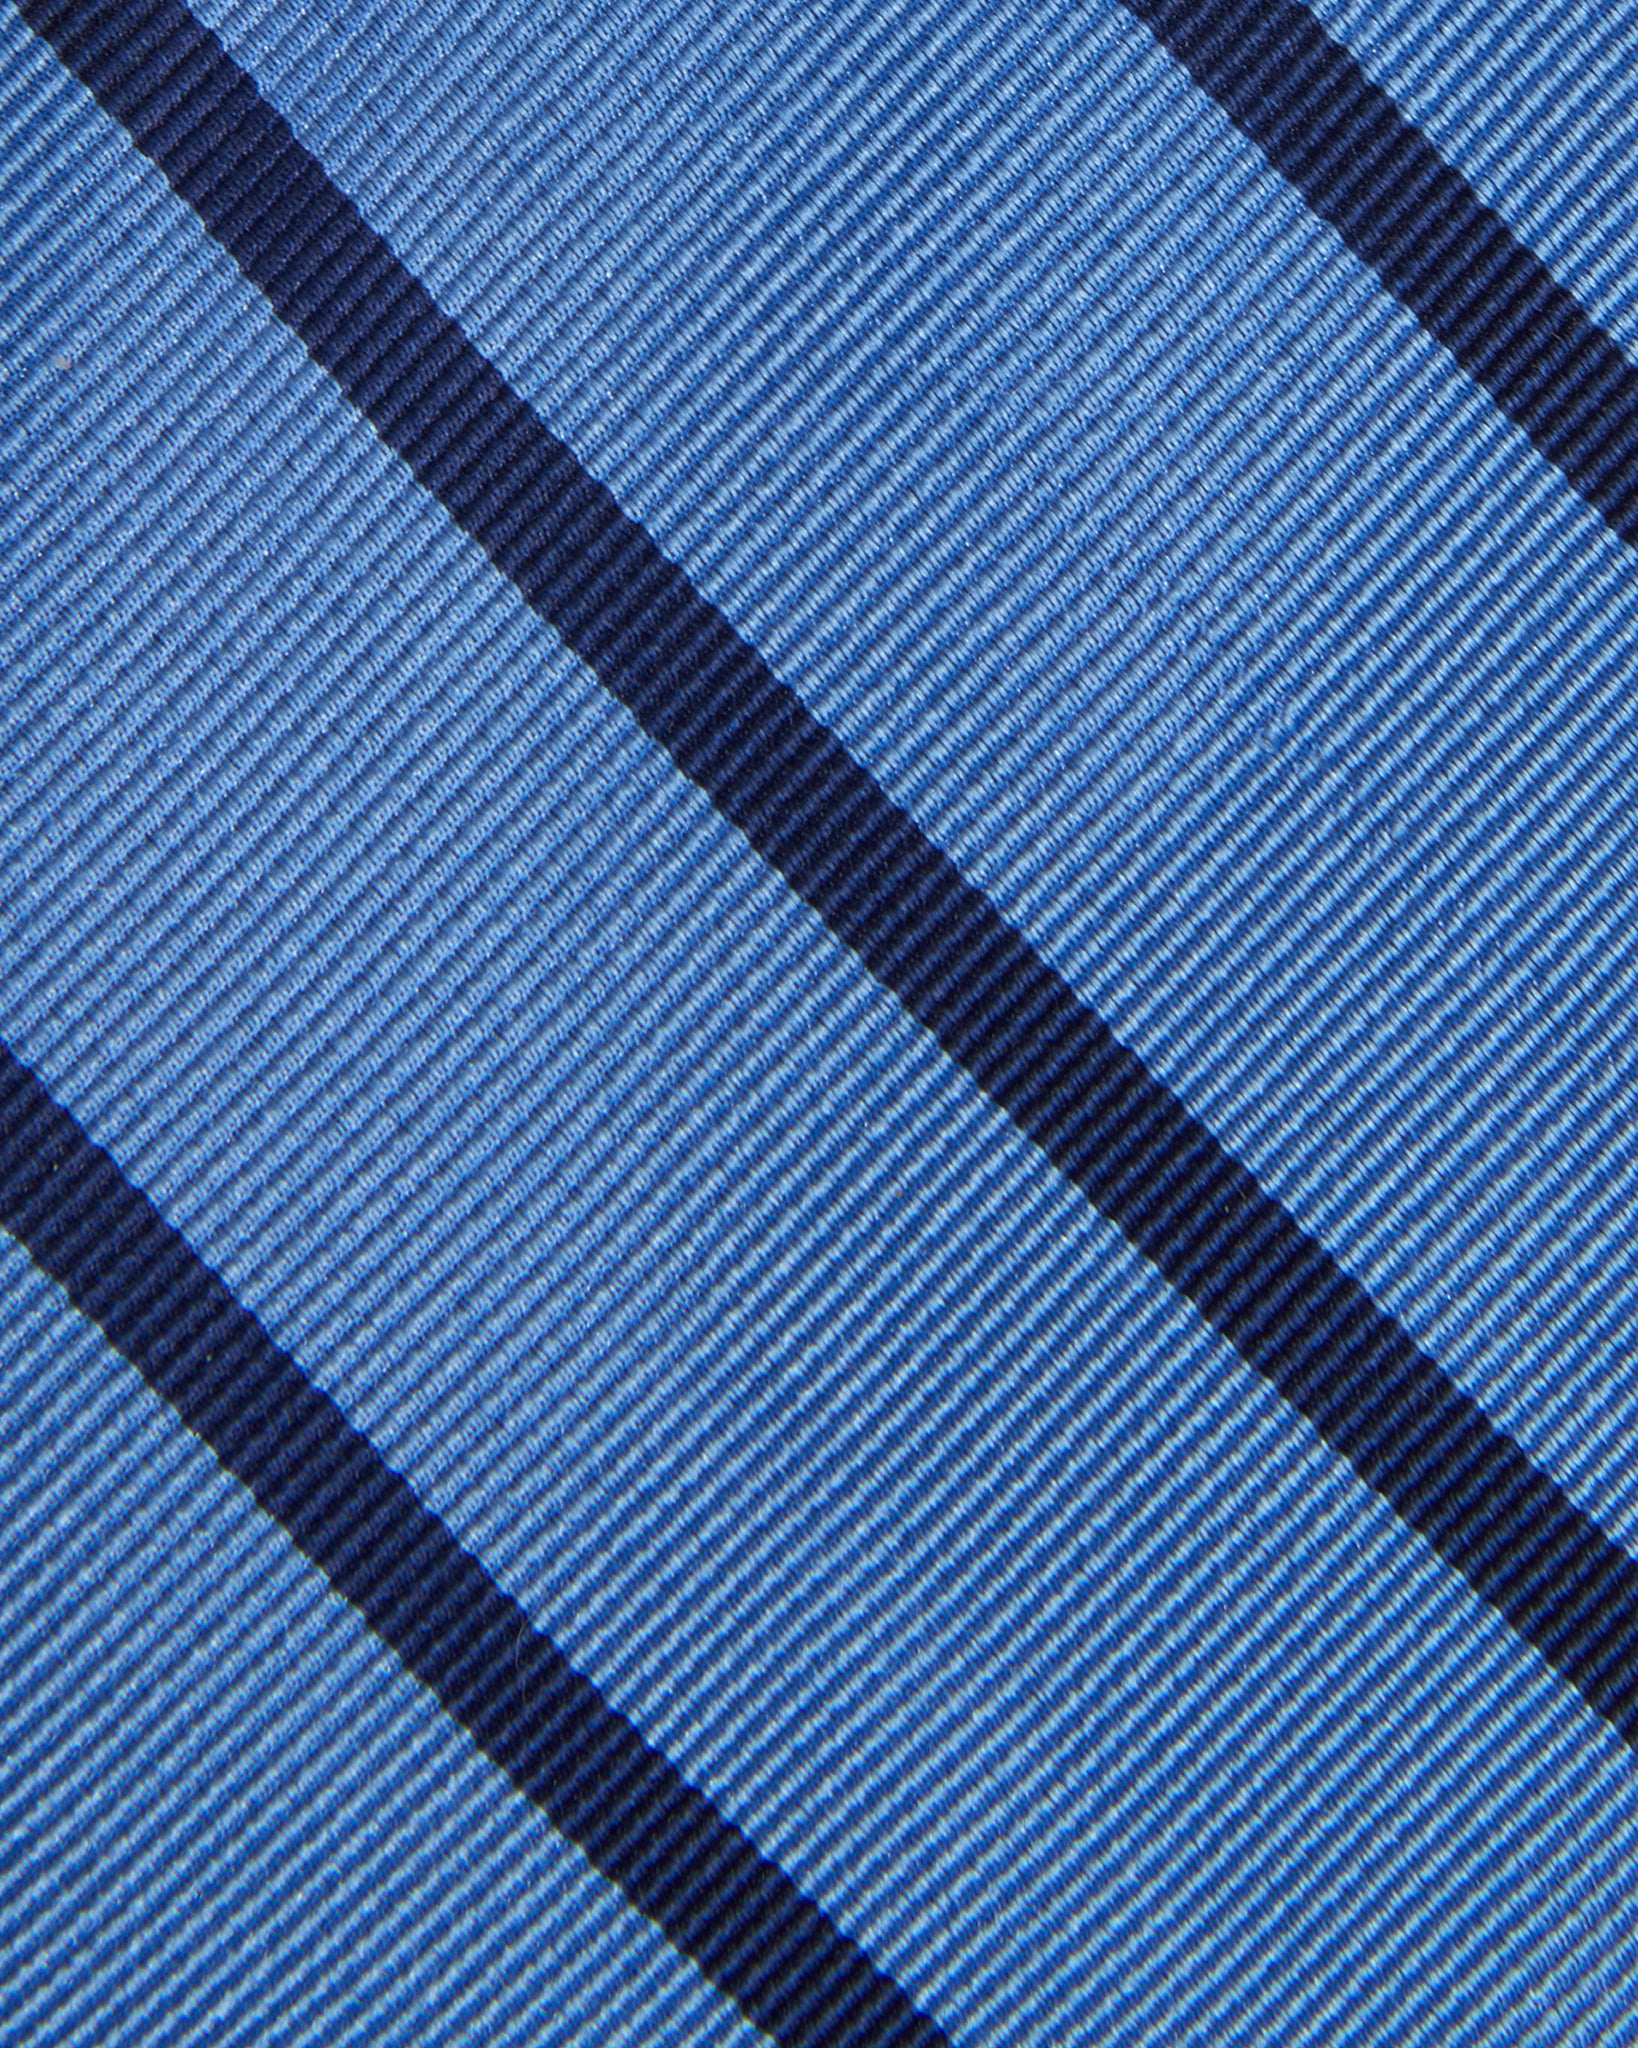 Silk Woven Tie in Dusty Blue/Navy Stripe